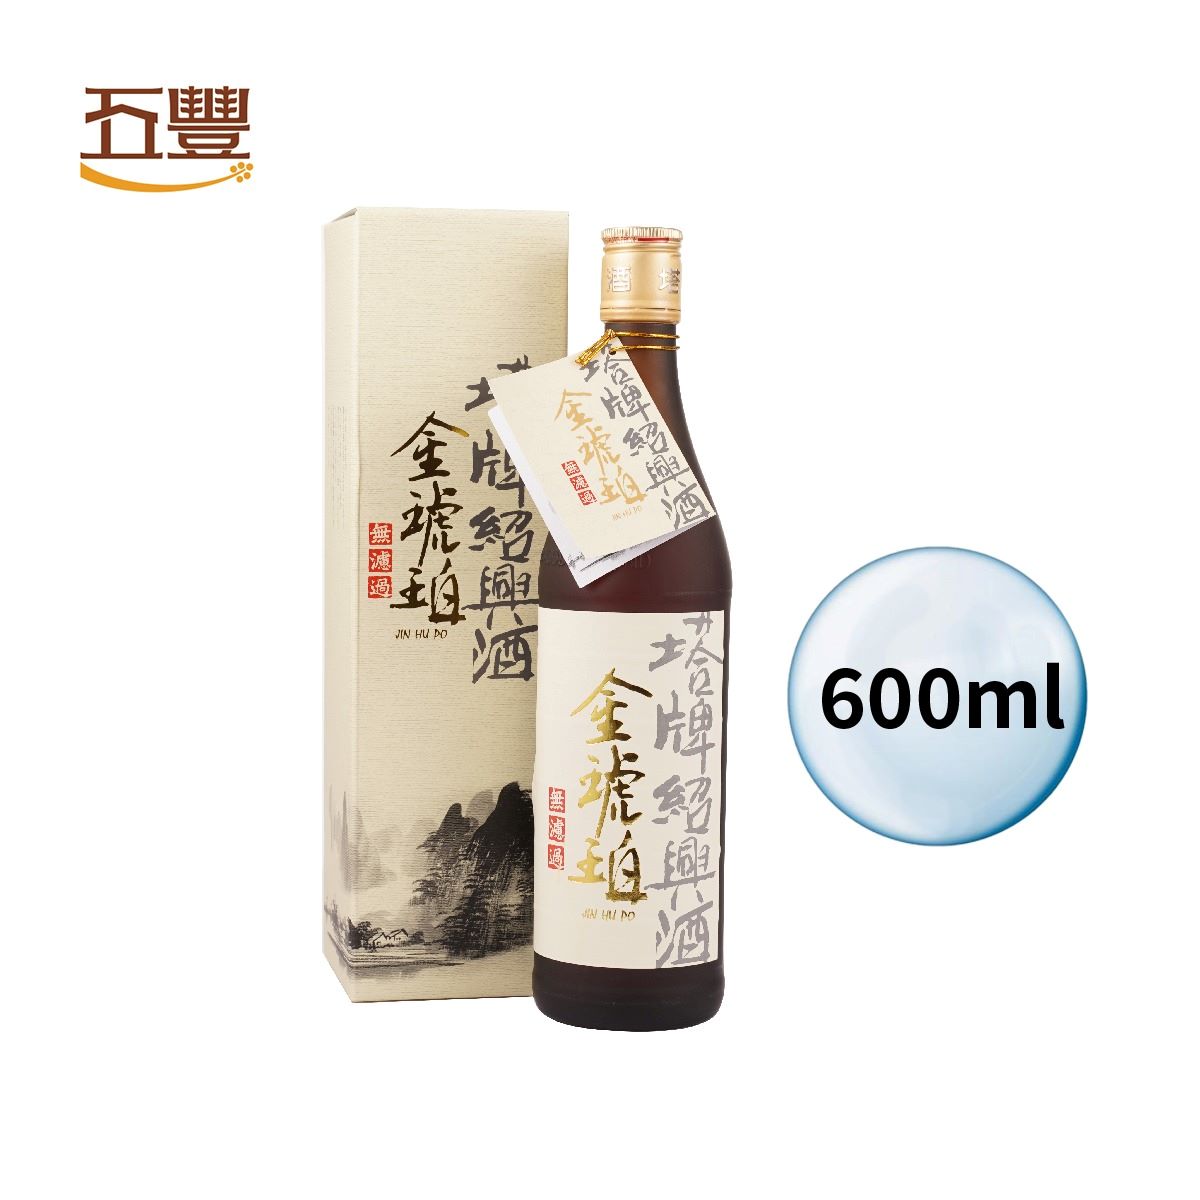 浙江塔牌 金琥珀紹興酒（無過濾）16% 600ml